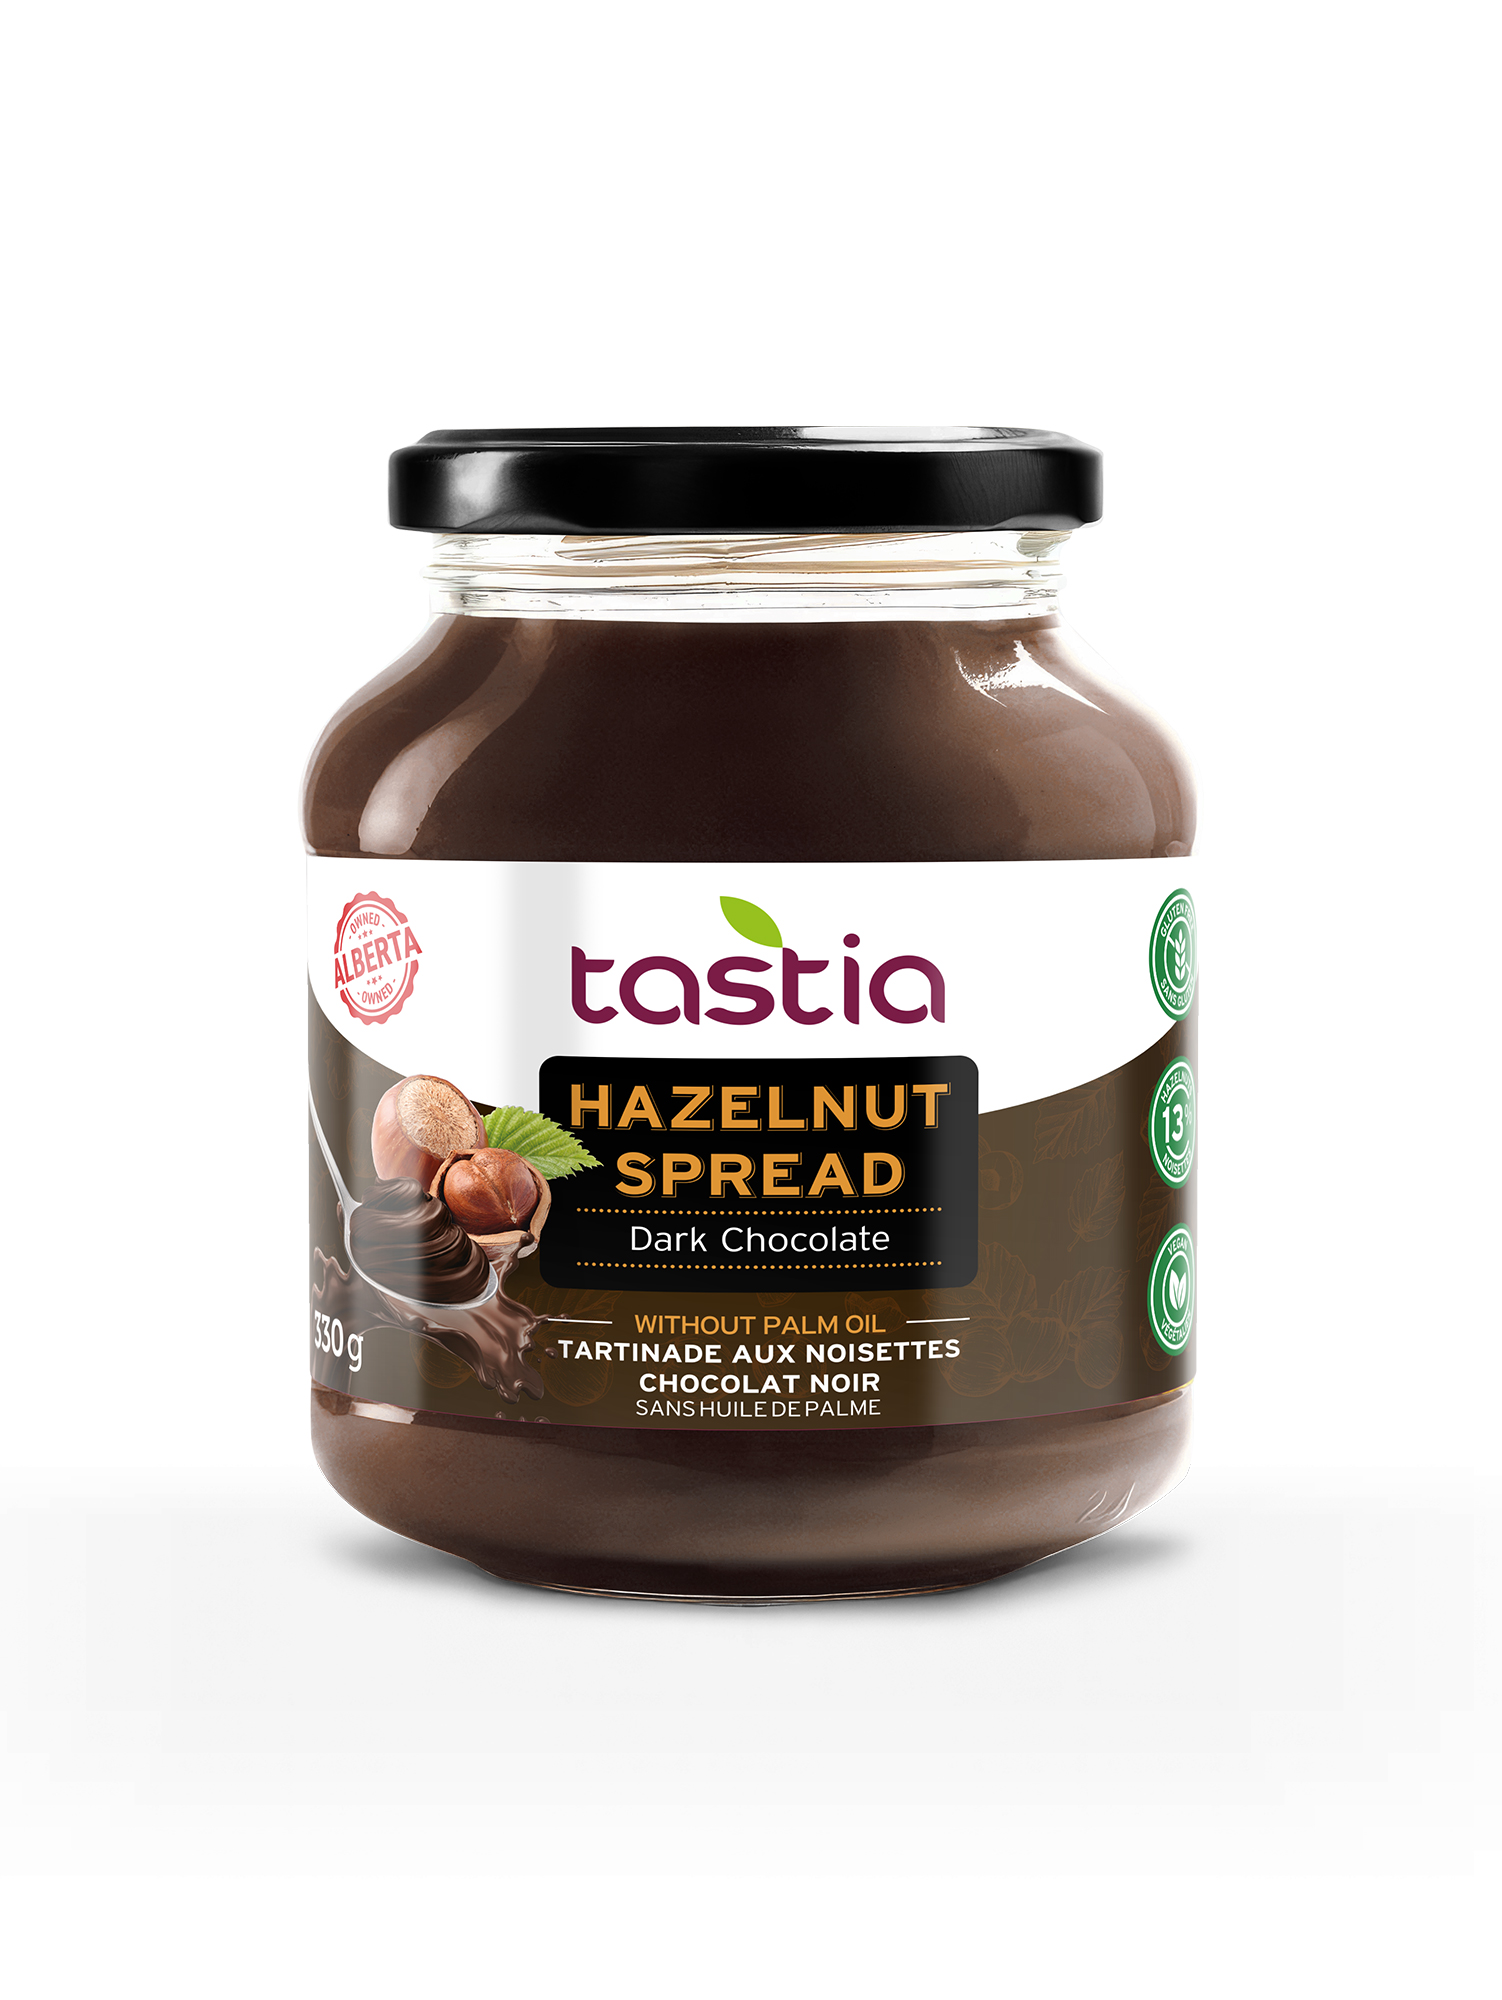 Tastia Dark Chocolate Hazelnut Spread